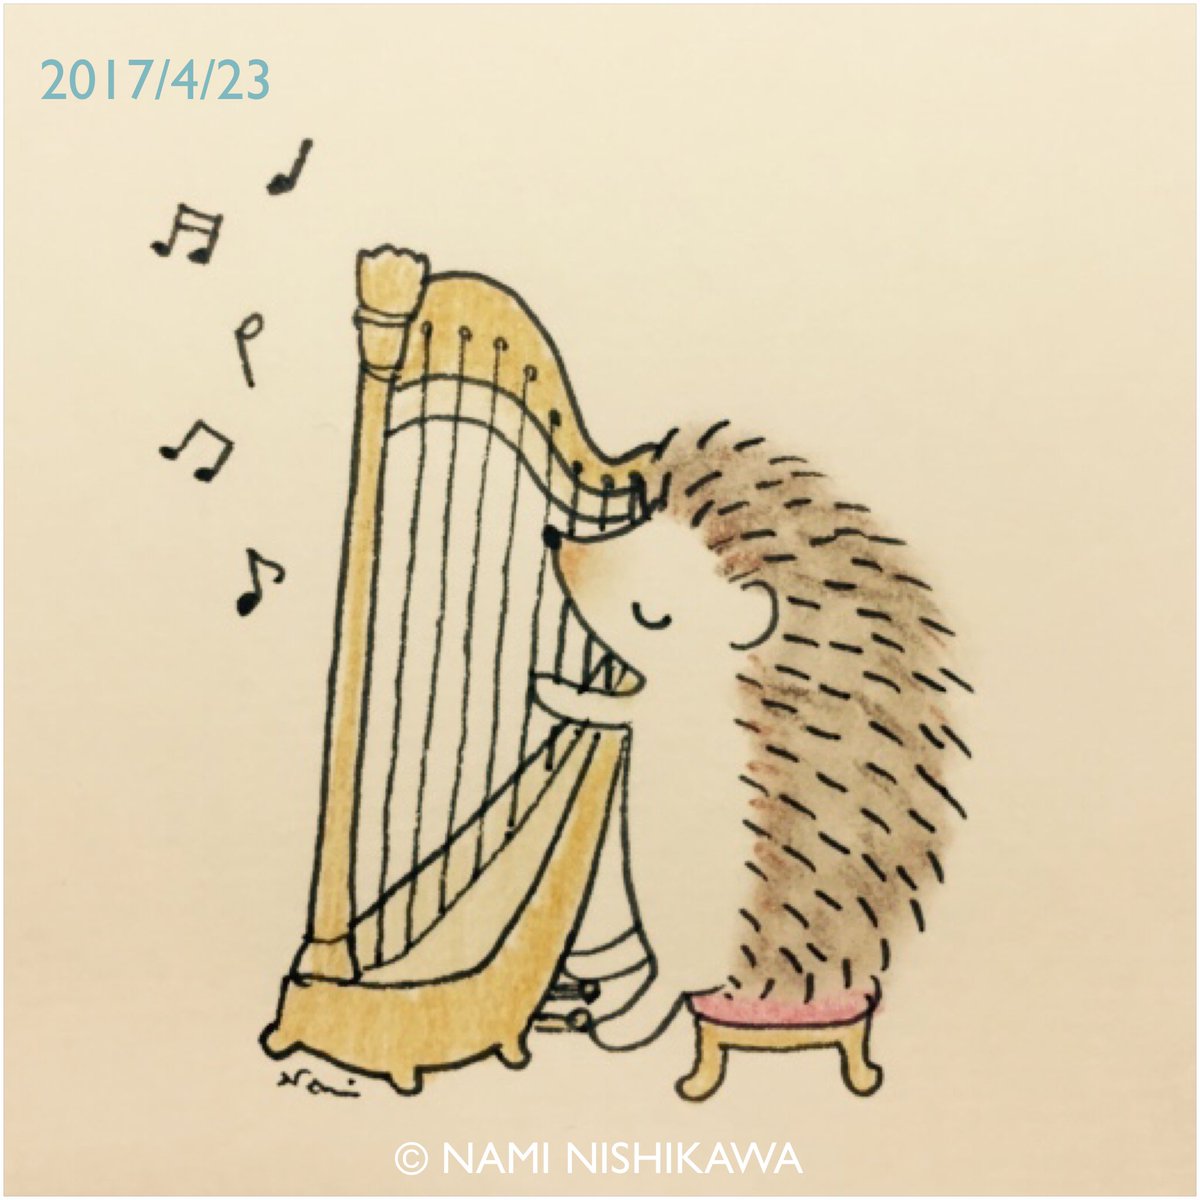 にしかわなみ なみはりねずみ On Twitter 1155 ハープ Harp Illustration Hedgehog Orchestra イラスト ハリネズミ オーケストラ なみはりねずみ